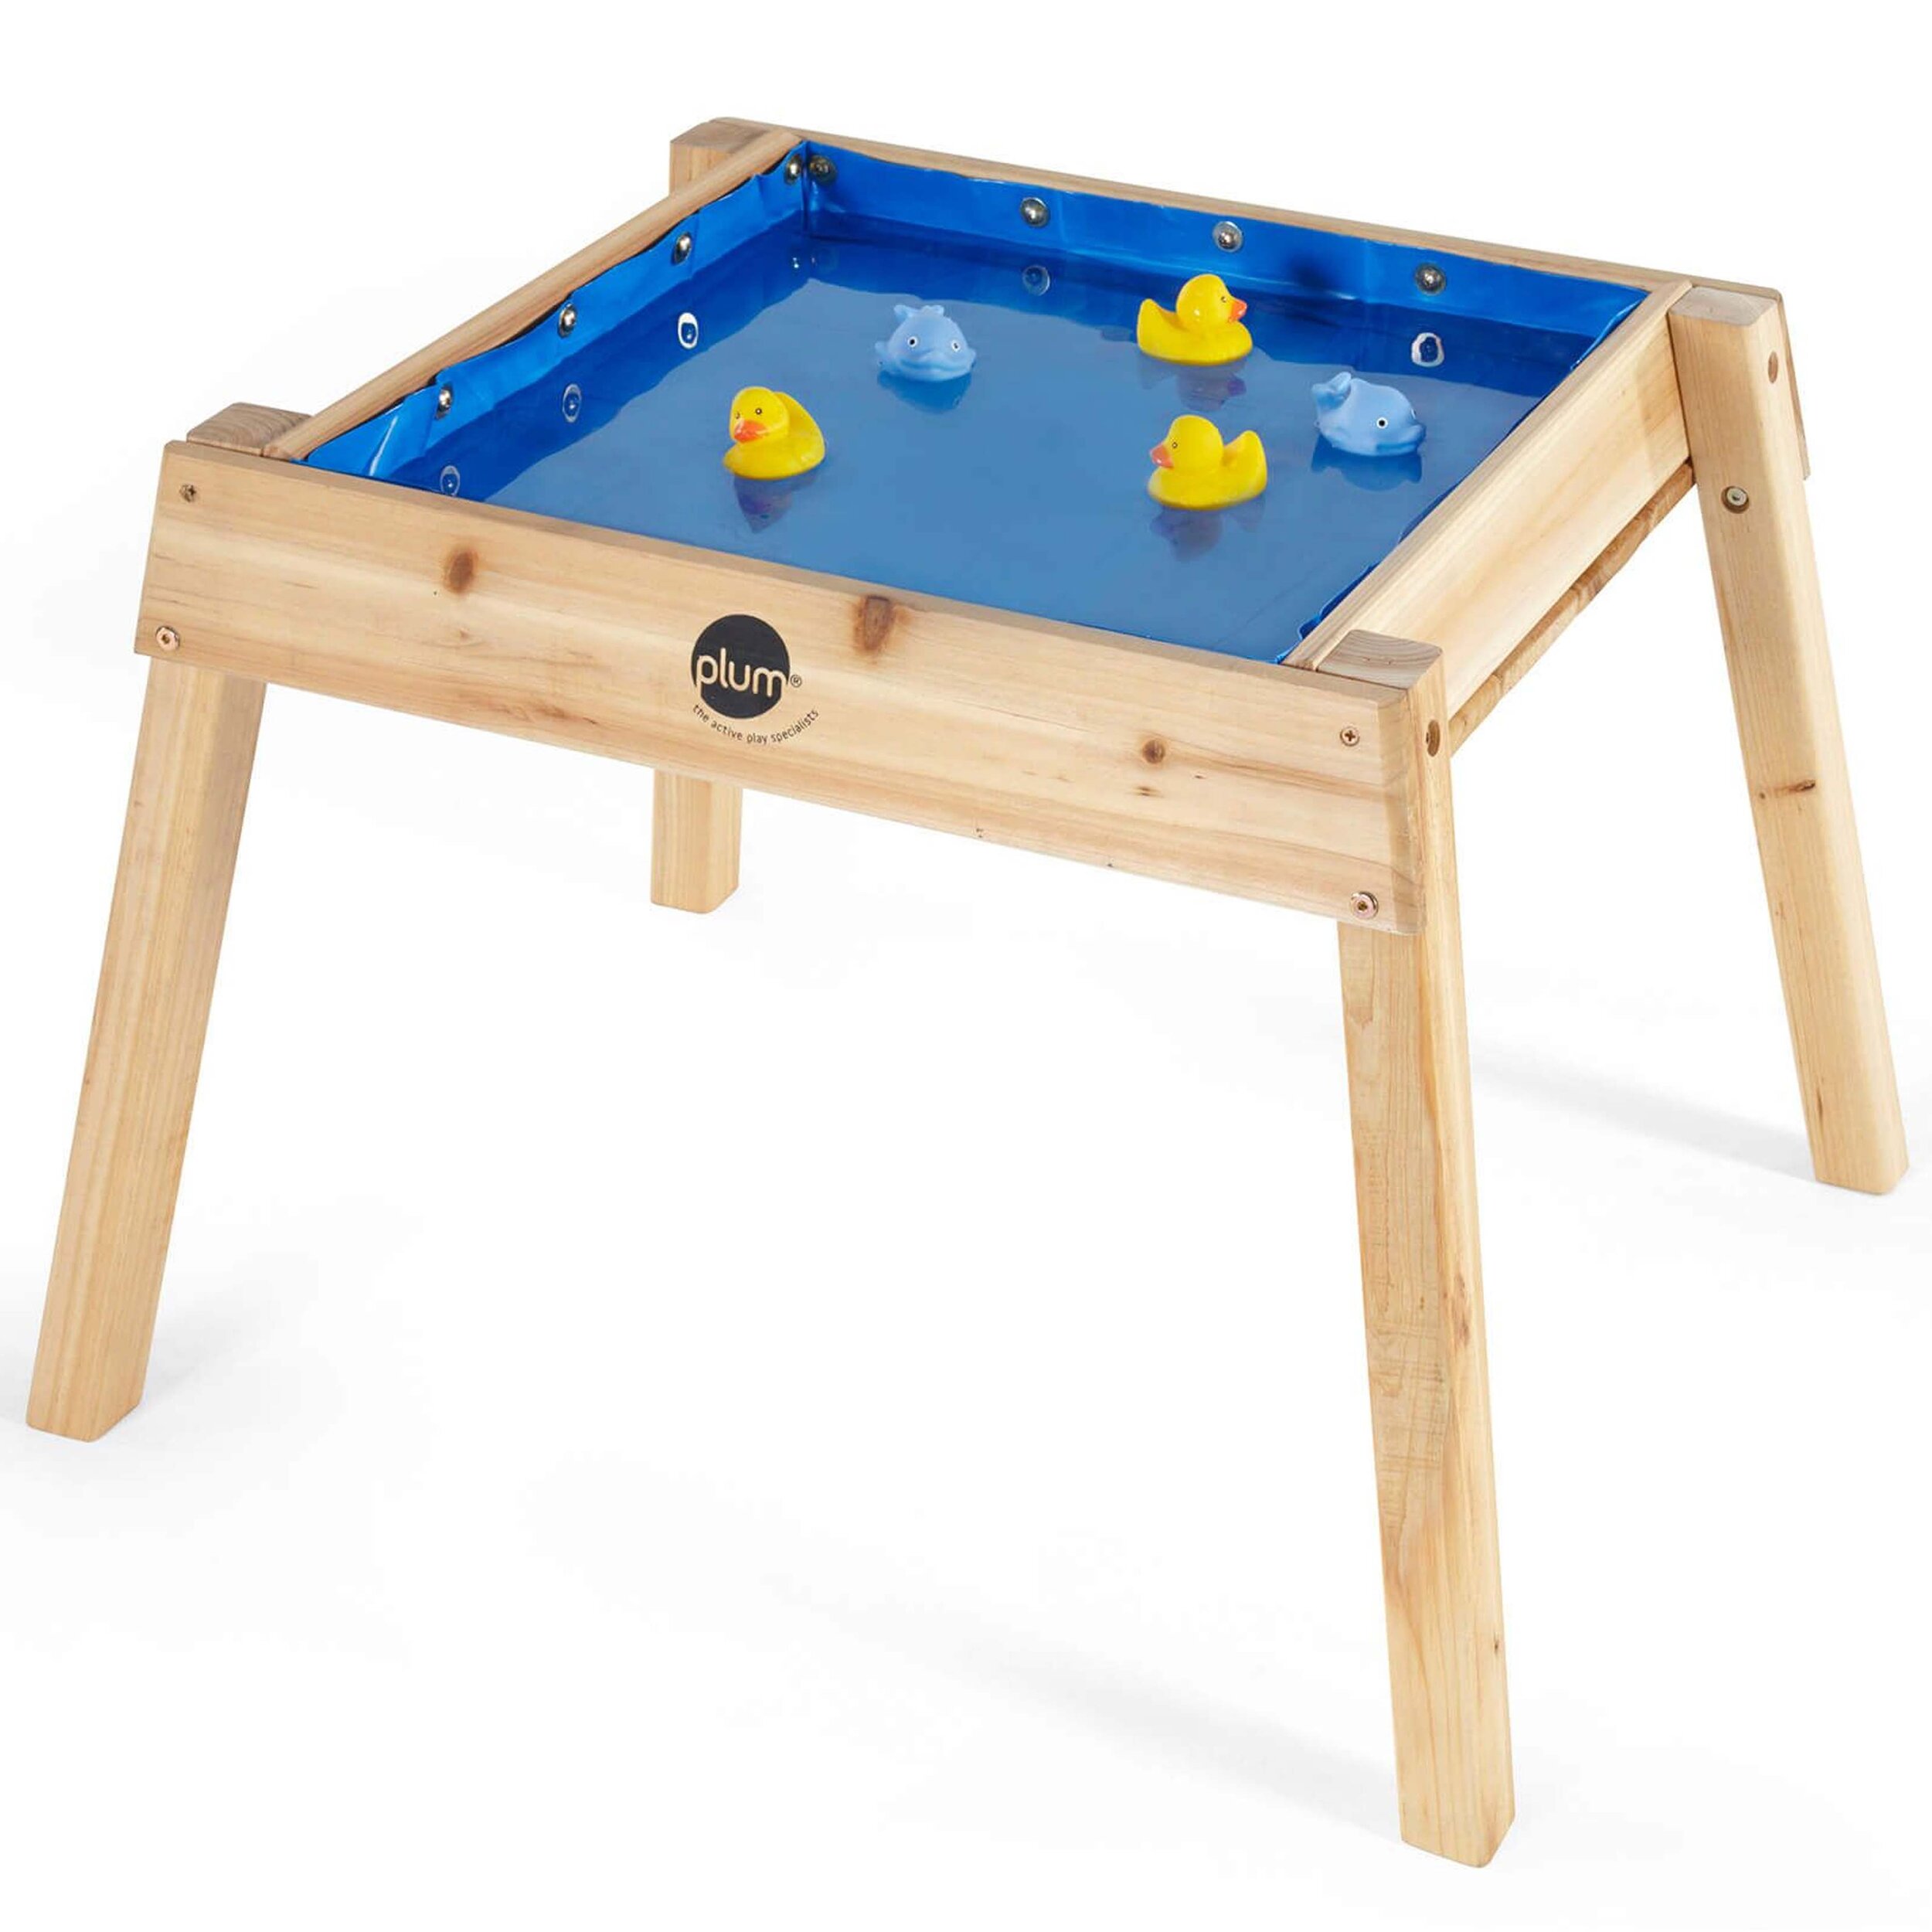 plum-tavolino-25071-legno-sabbia-acqua-giochi-esterno-babylove2000-prodotto-acqua.jpg